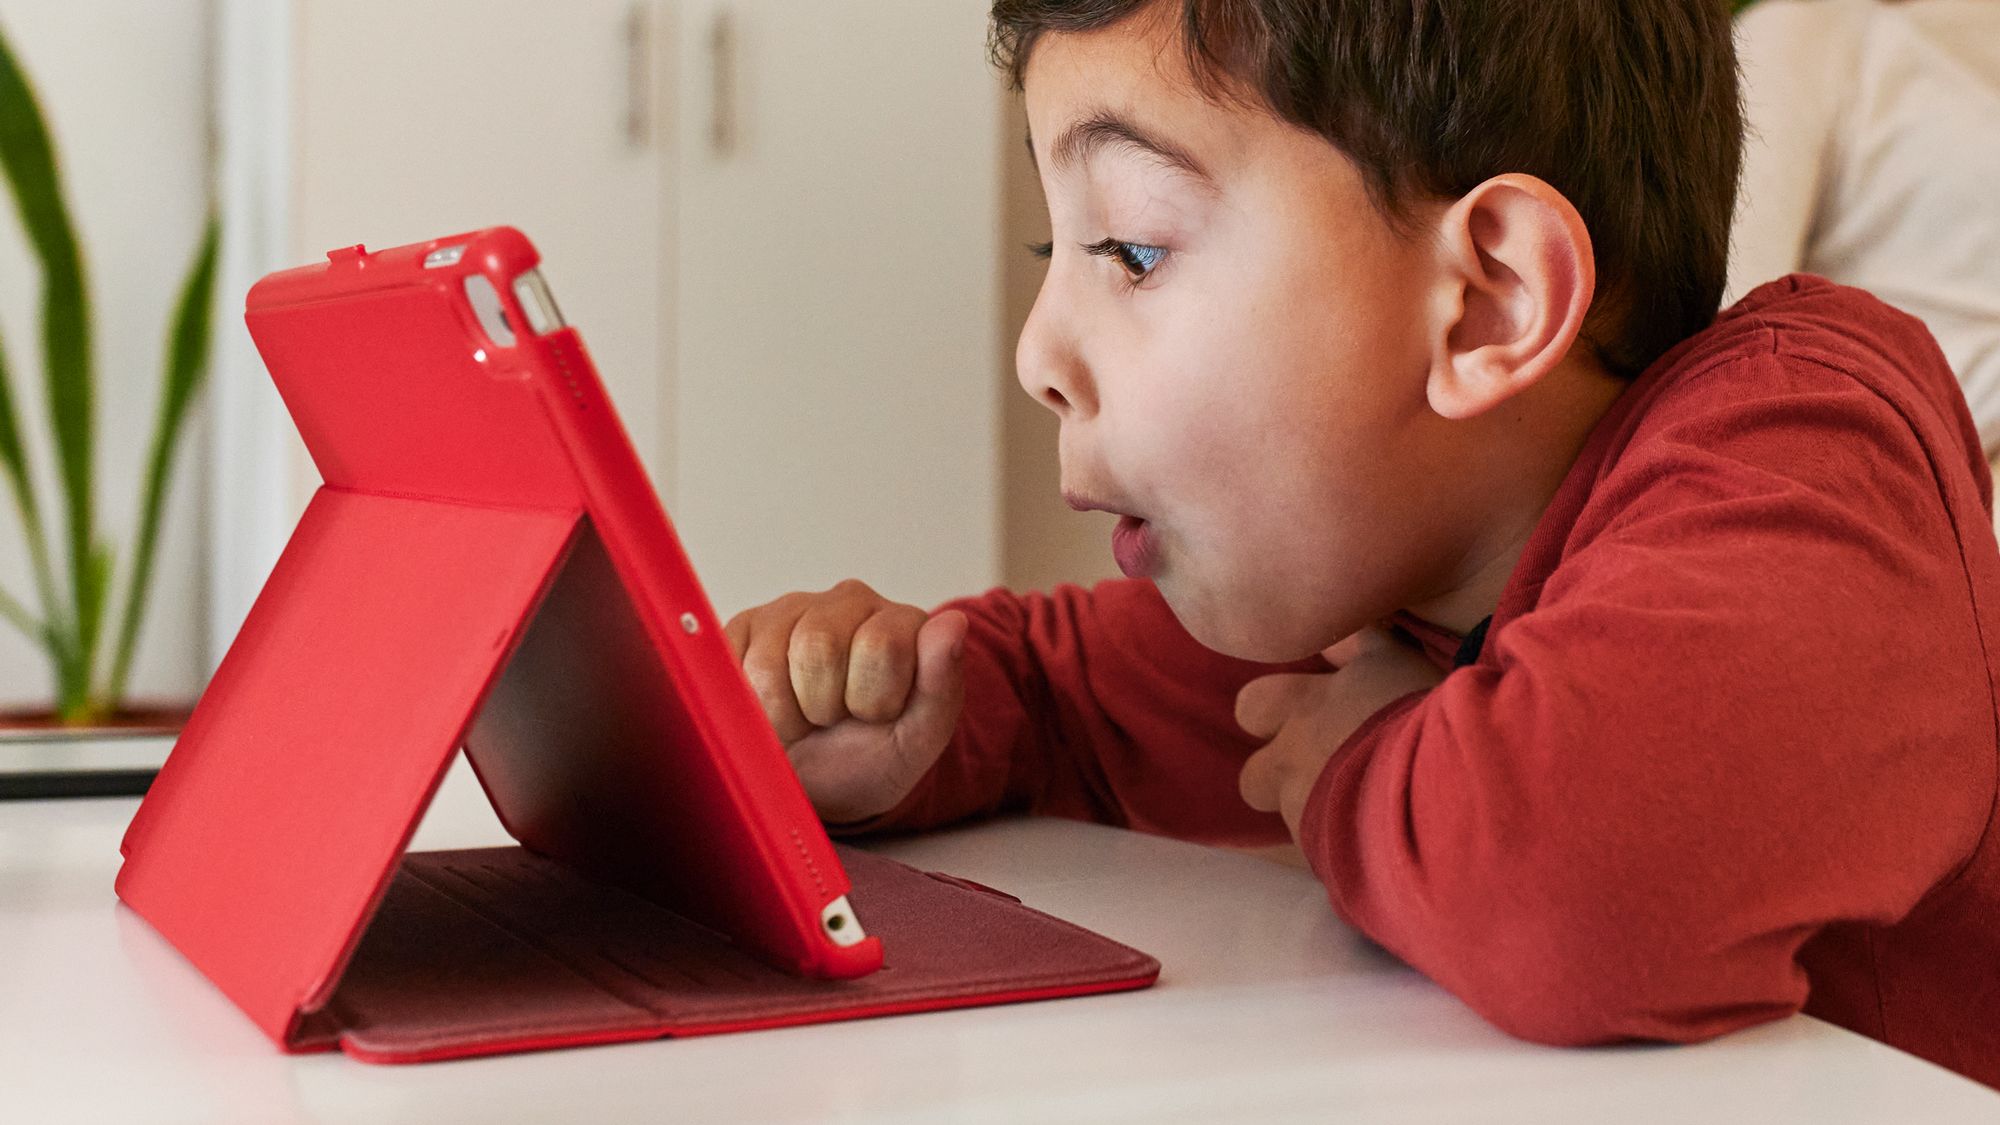 Máy tính bảng trẻ em được thiết kế dành riêng cho các em nhỏ với những tính năng an toàn và giáo dục. Họ có thể học tập, chơi game và giải trí một cách thoải mái và đồng thời cải thiện kỹ năng của mình. Xem ngay ảnh về máy tính bảng trẻ em để khám phá thêm.